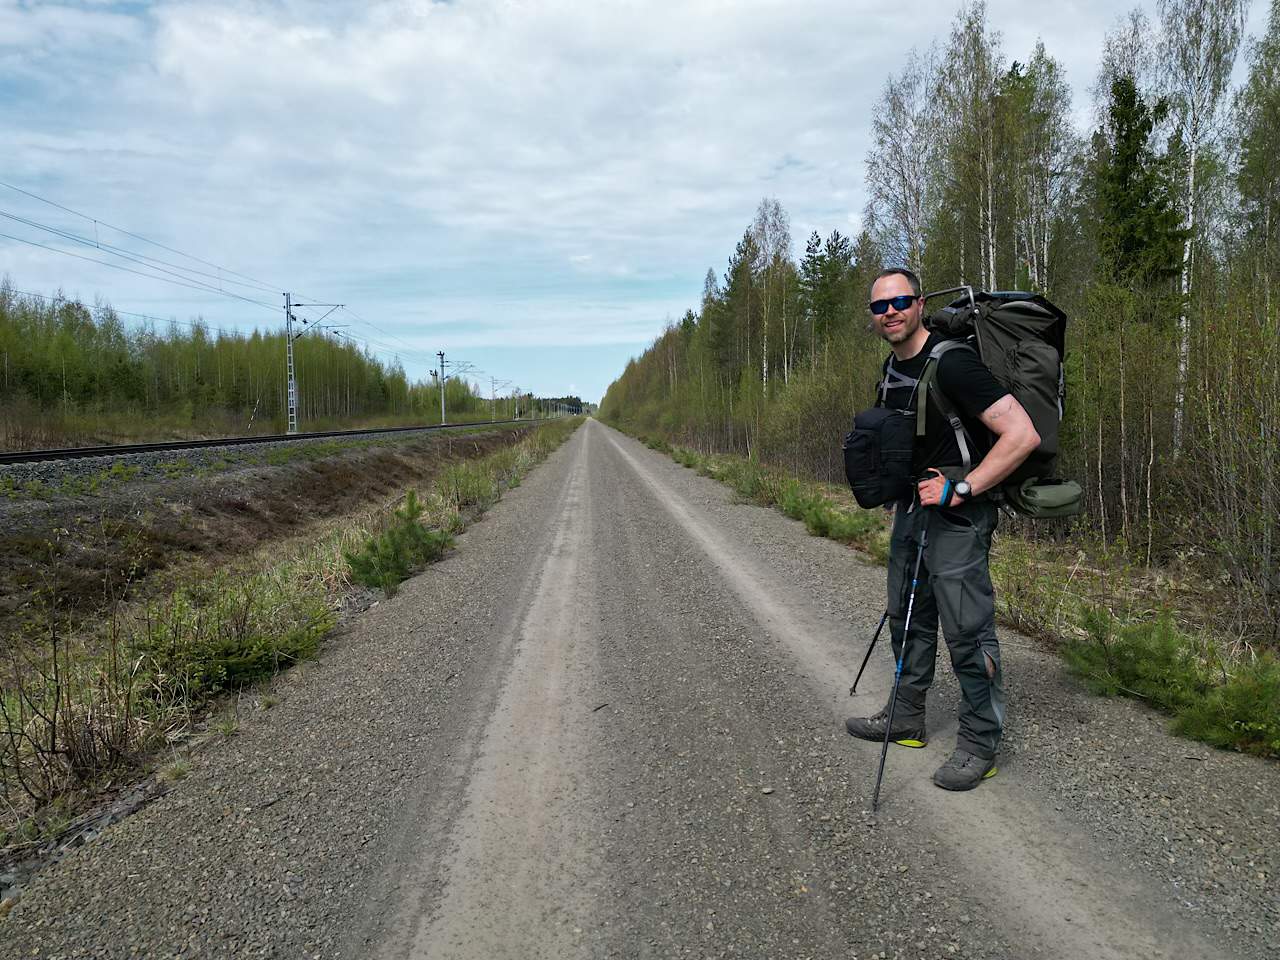 Etape 2 af Finland på langs - til fods, med eventyrer Erik B. Jørgensen på vej ad grusvej langs jernebane